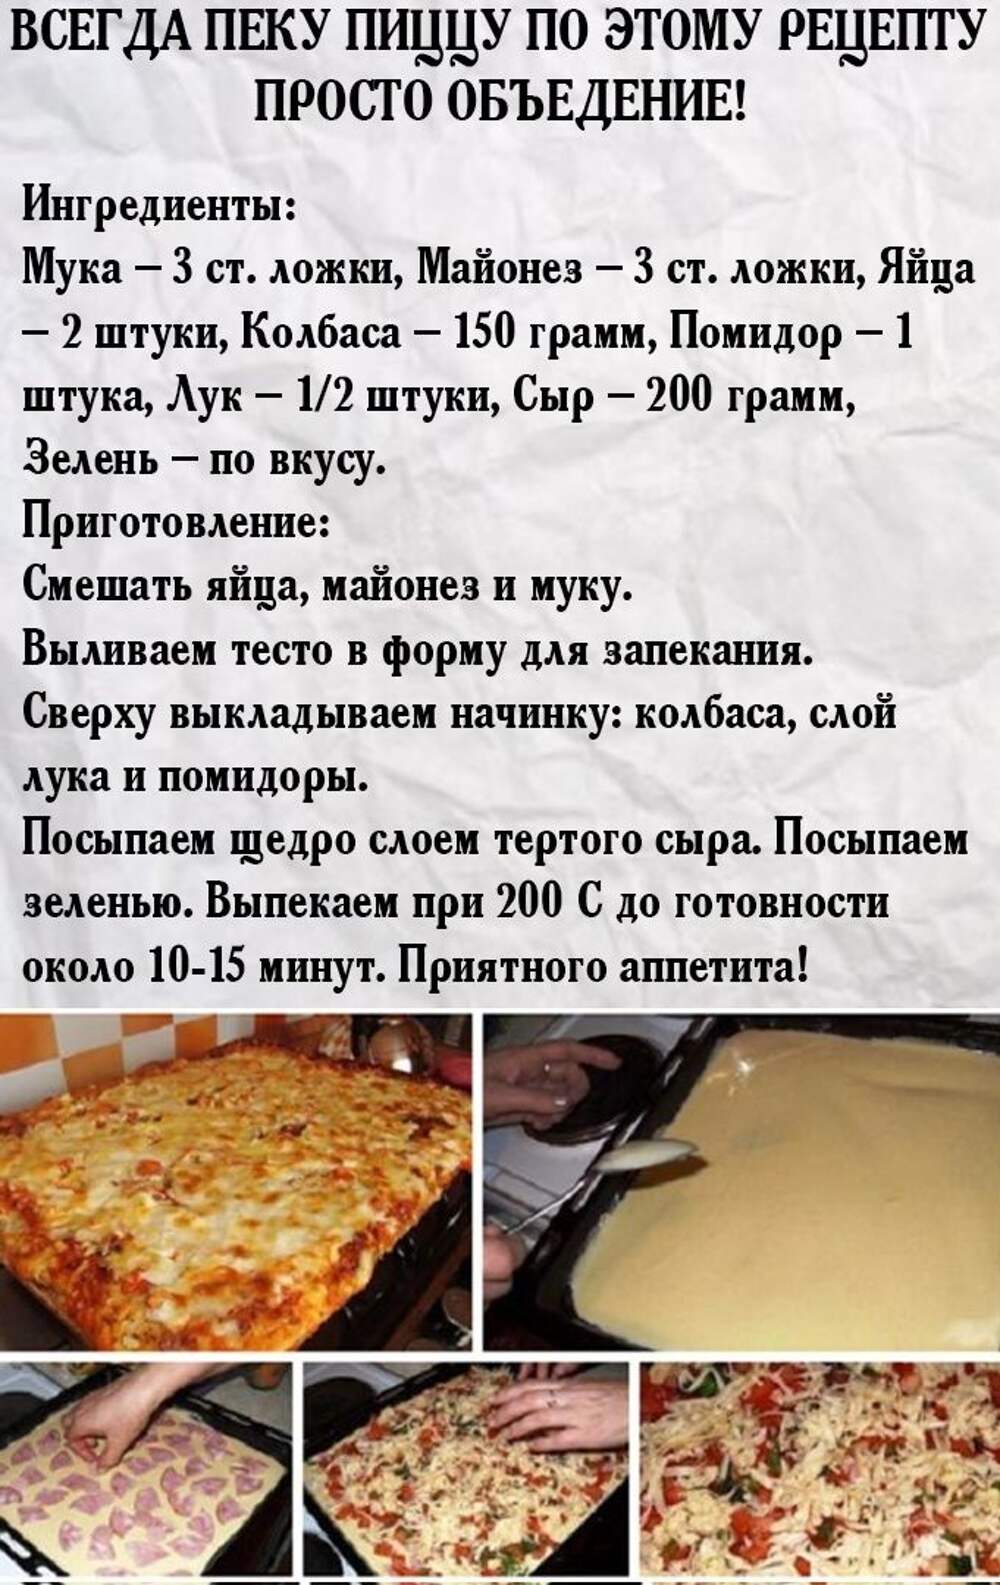 пицца рецепт в домашних условиях в духовке ассорти (120) фото